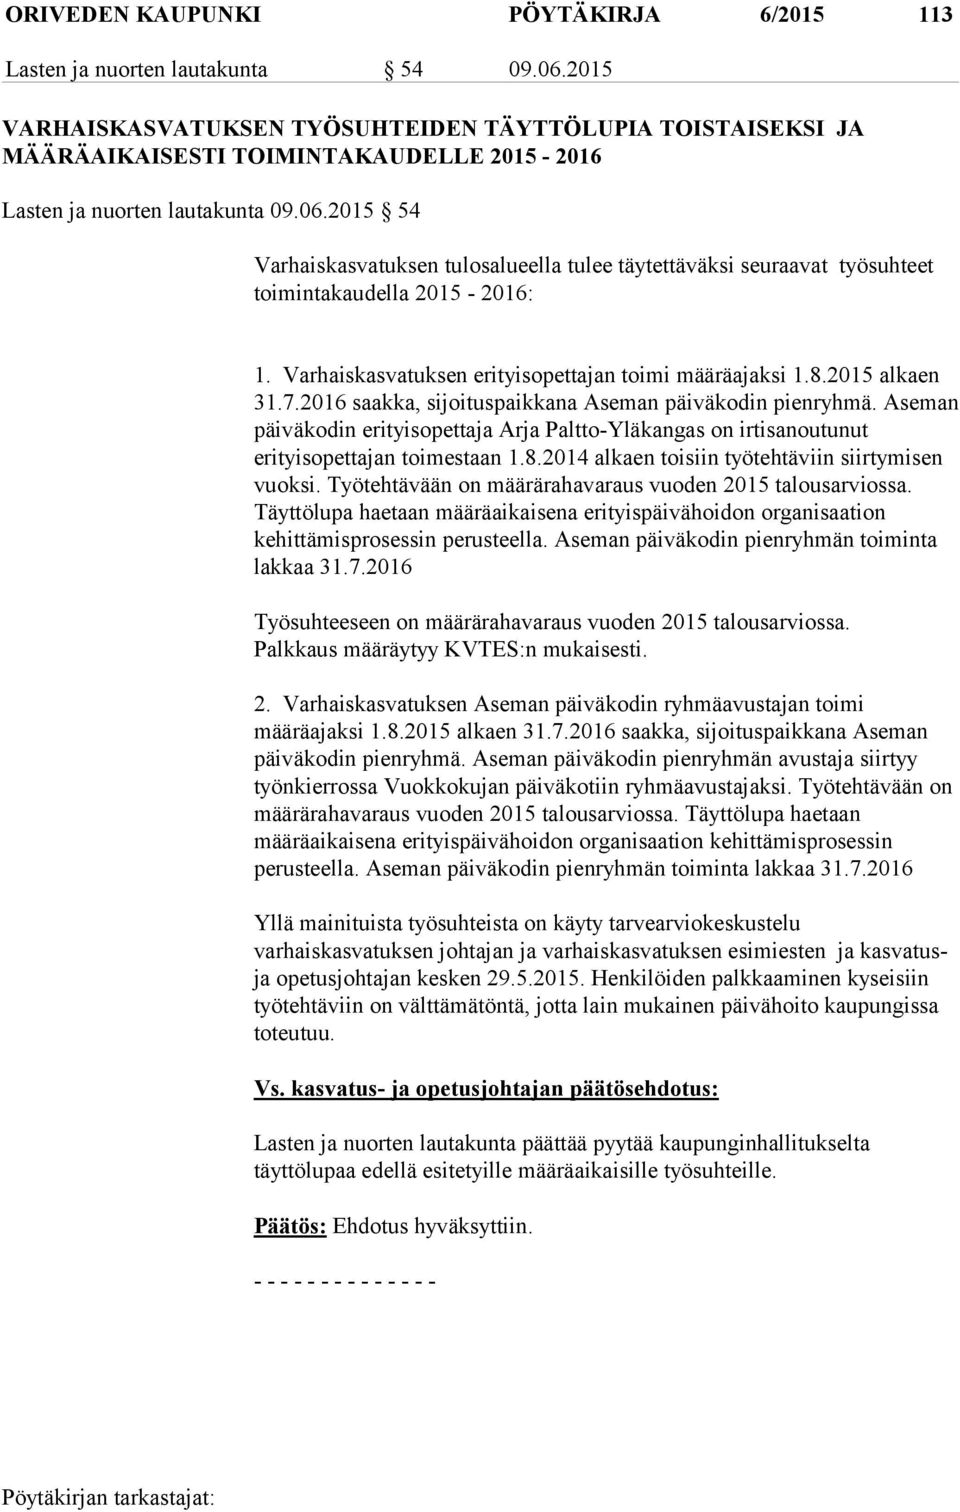 2015 54 Varhaiskasvatuksen tulosalueella tulee täytettäväksi seuraavat työsuhteet toimintakaudella 2015-2016: 1. Varhaiskasvatuksen erityisopettajan toimi määräajaksi 1.8.2015 alkaen 31.7.